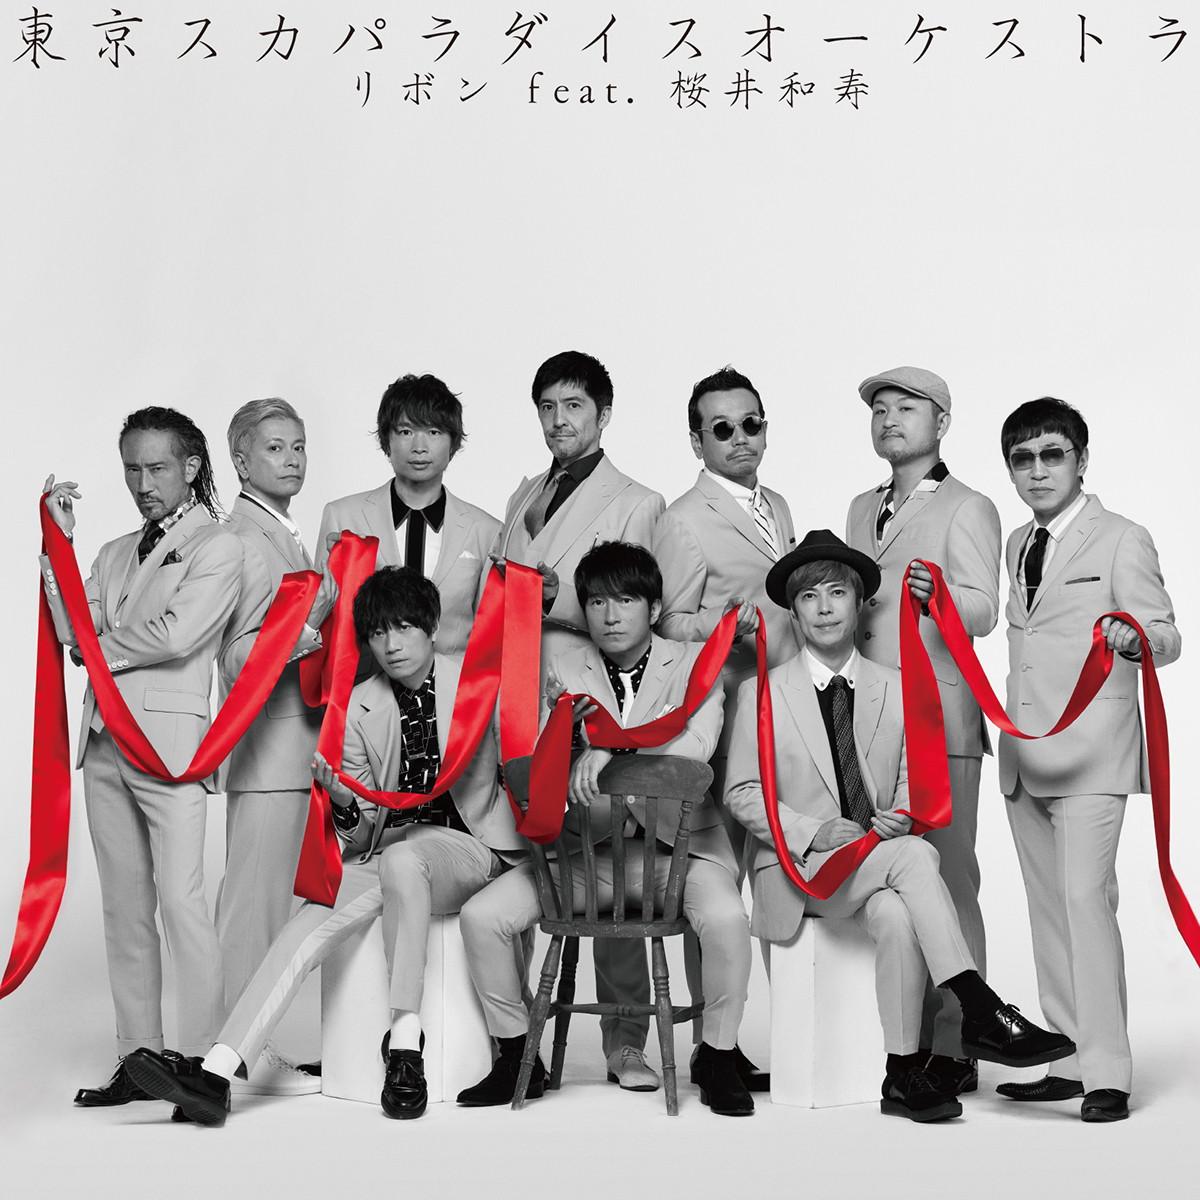 「リボン feat.桜井和寿(Mr.Children)」CD only